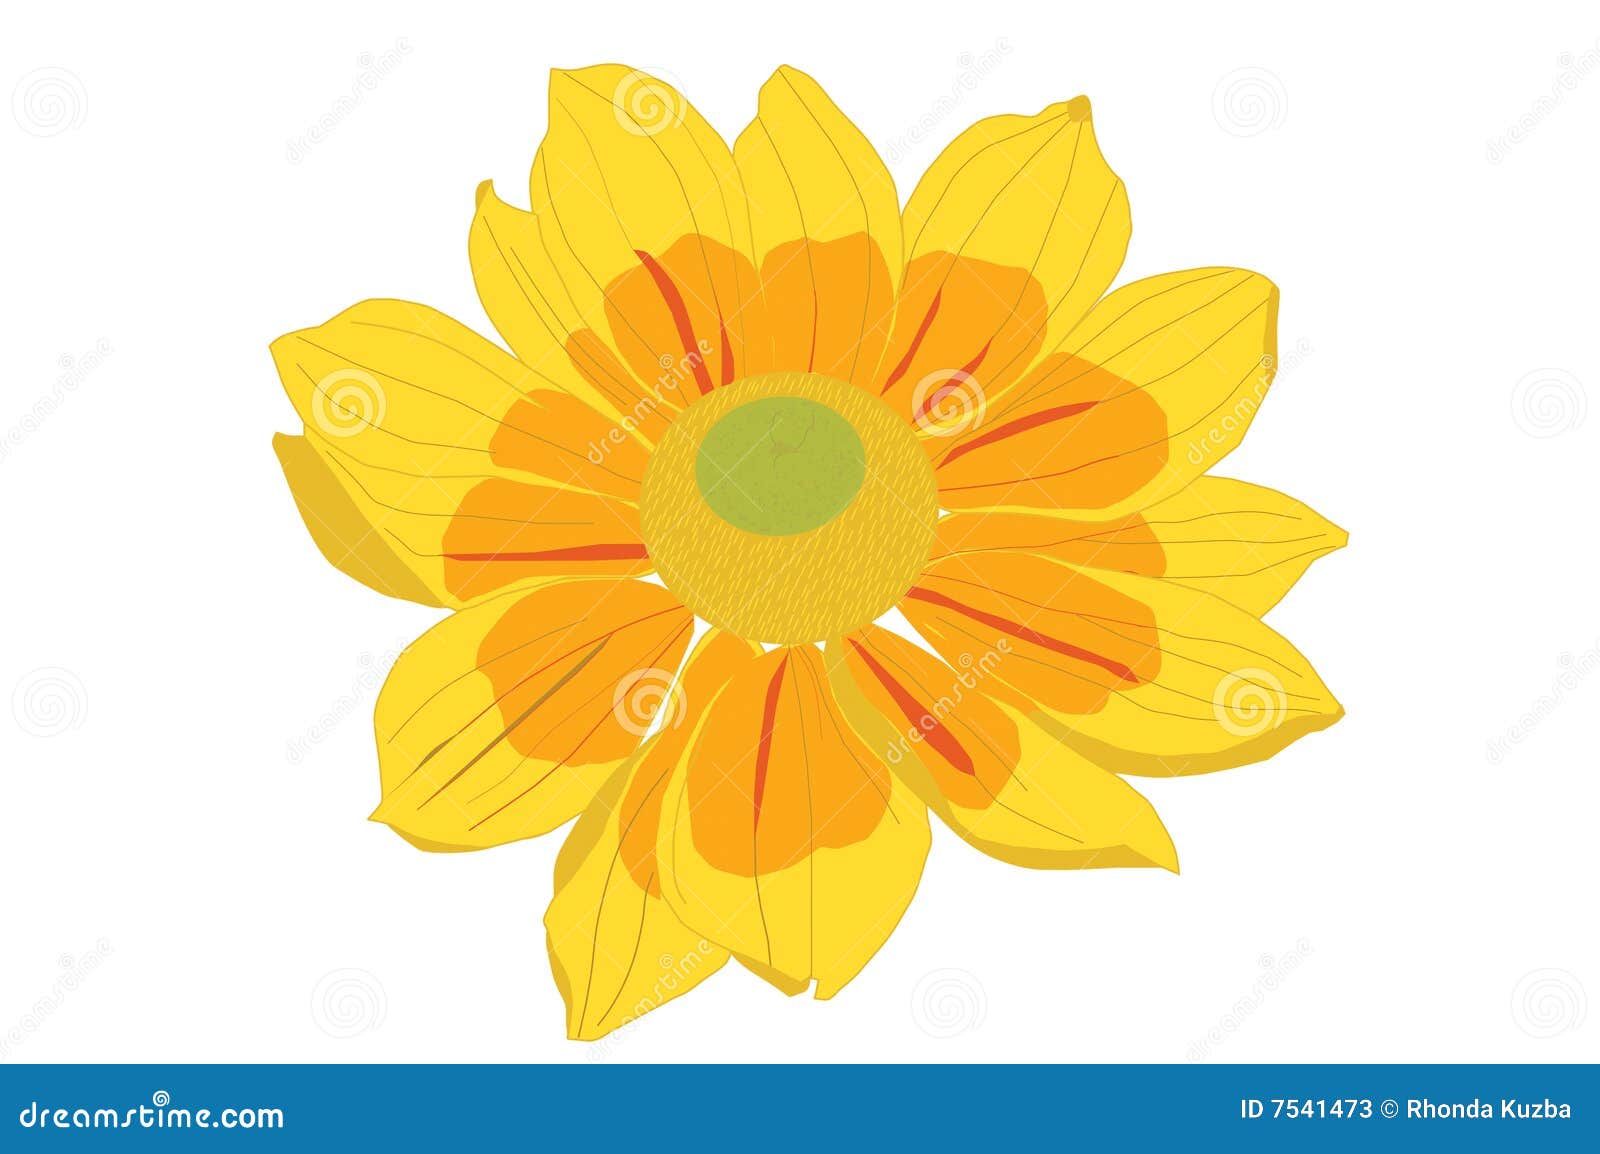 clip art yellow flower